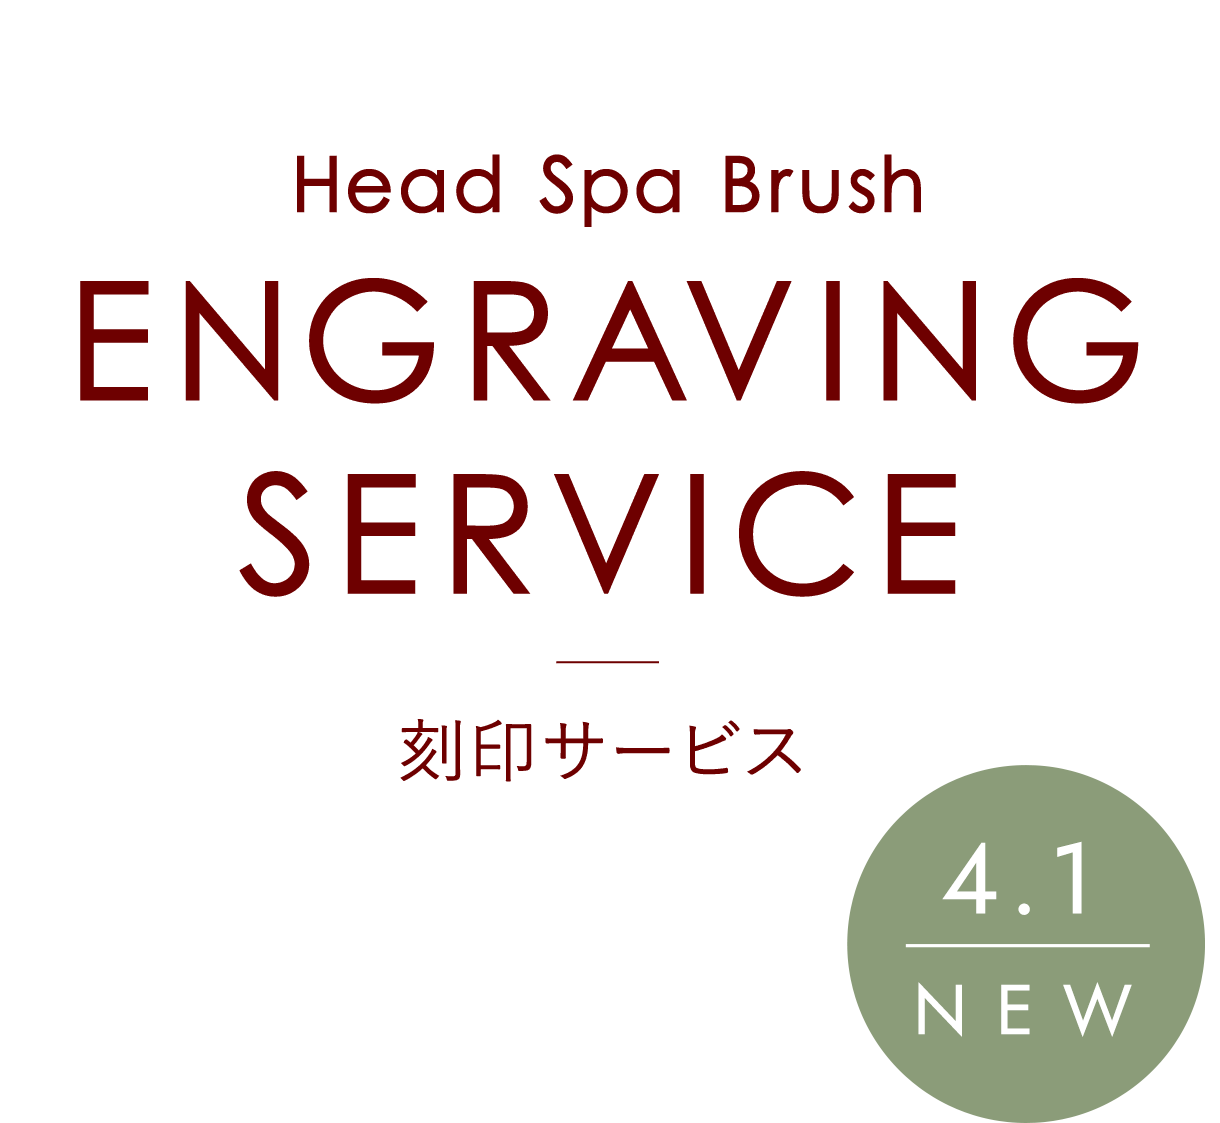 Head Spa Brush ヘッドスパブラシ ENGRAVING SERVICE 刻印サービス